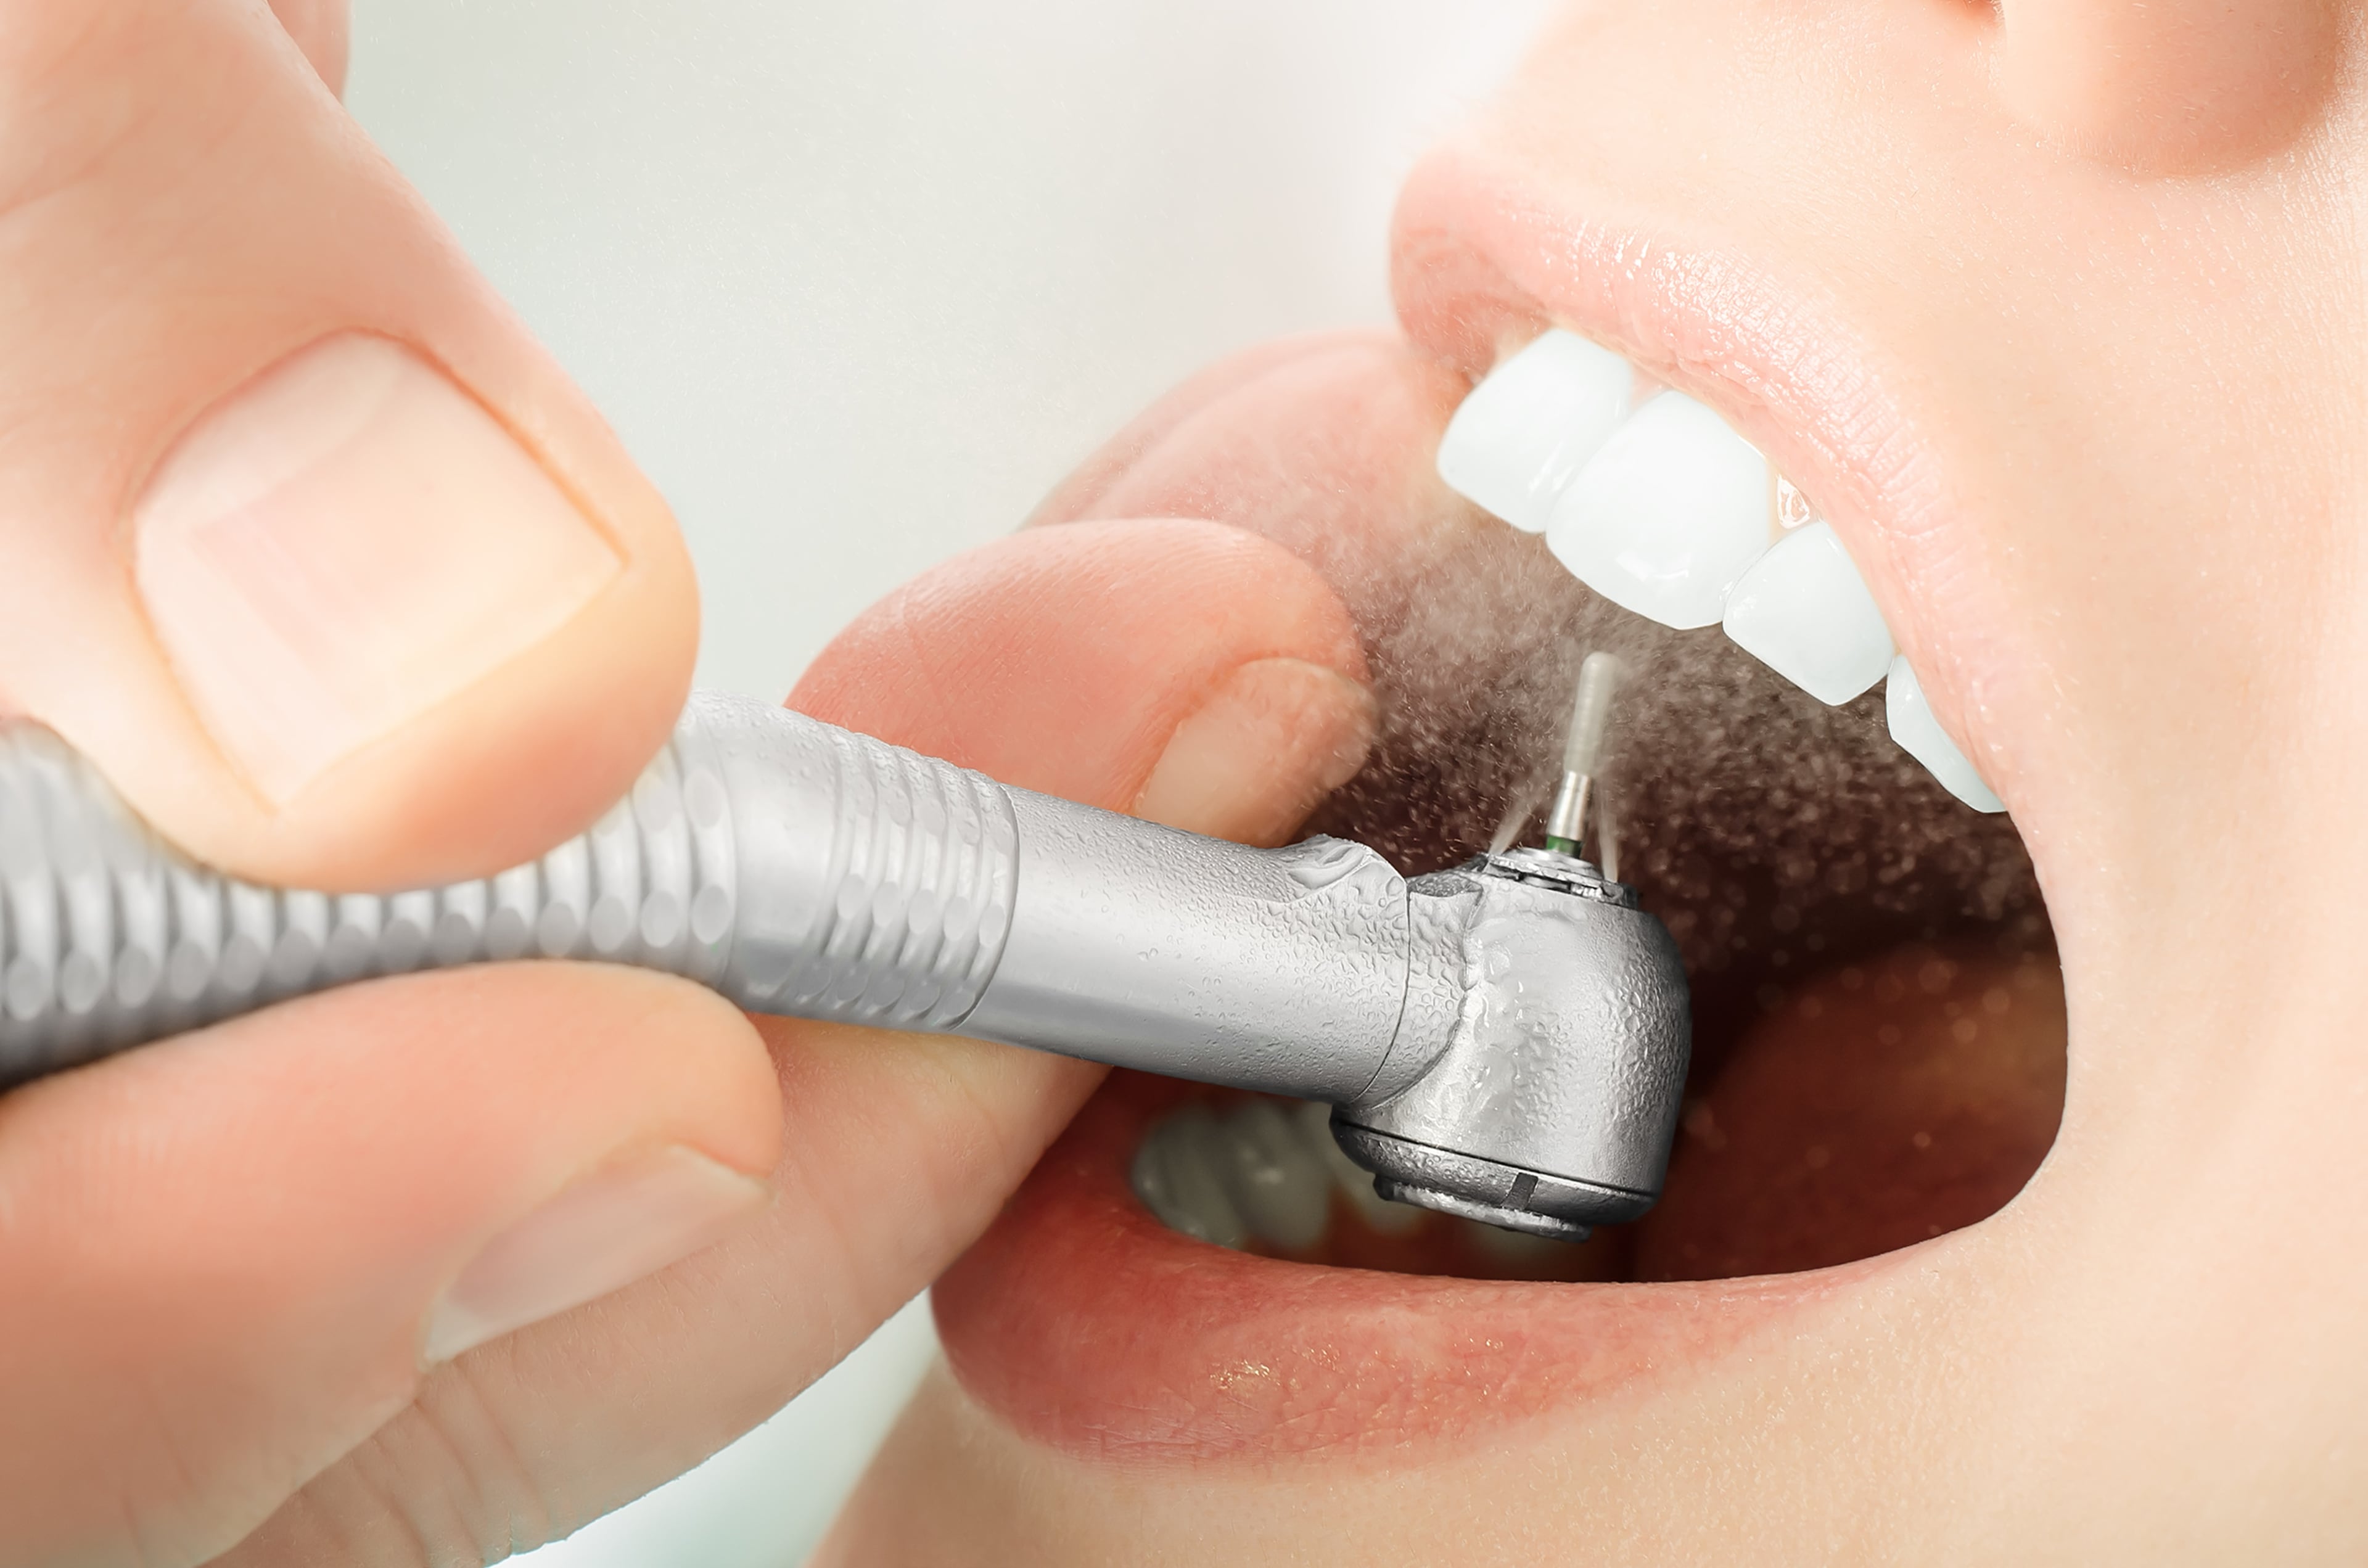 Какой врач проводит чистку зубов. Аппарат АИР флоу стоматология. Профессиональная гигиена полости рта.